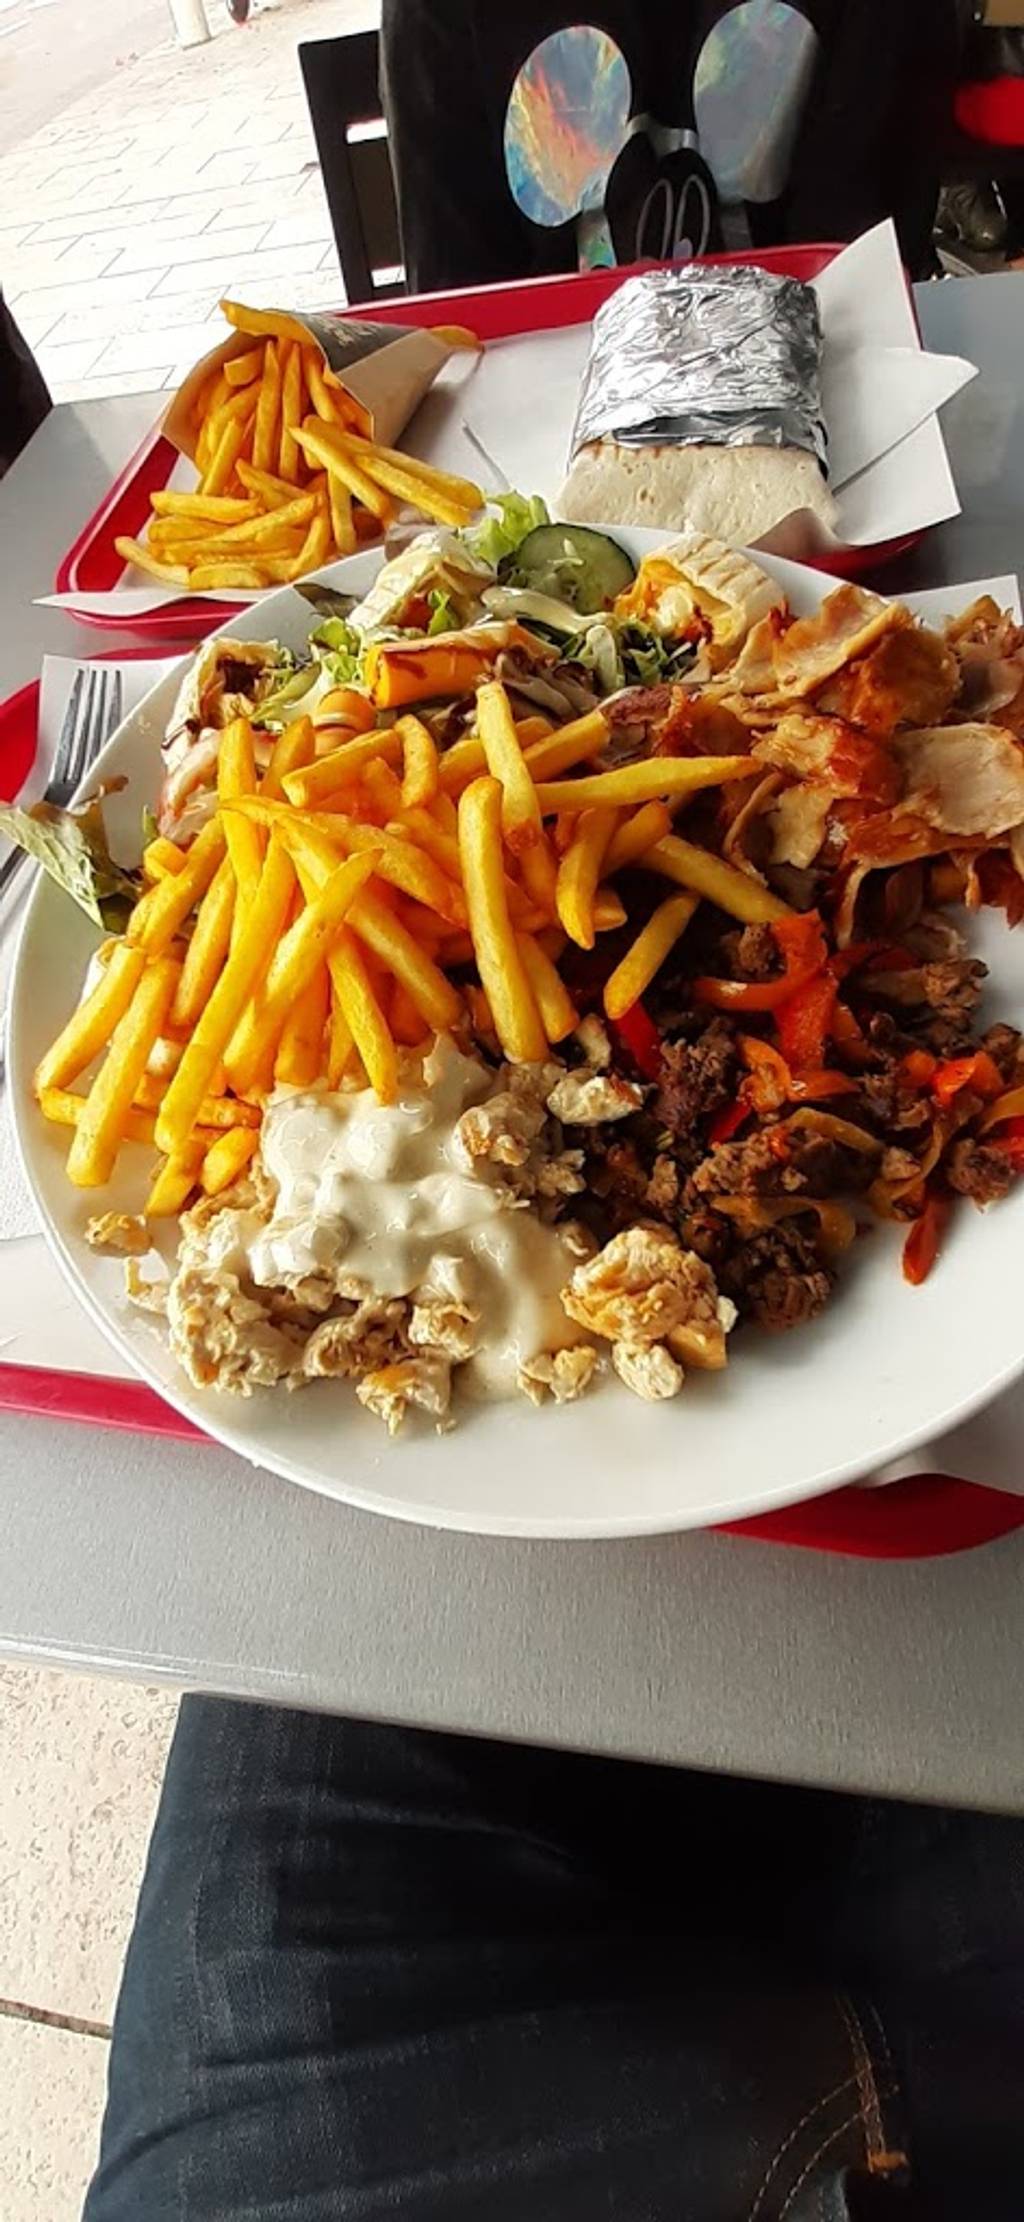 Mac keinzi Toulon - Food Tableware Recipe Ingredient Staple food